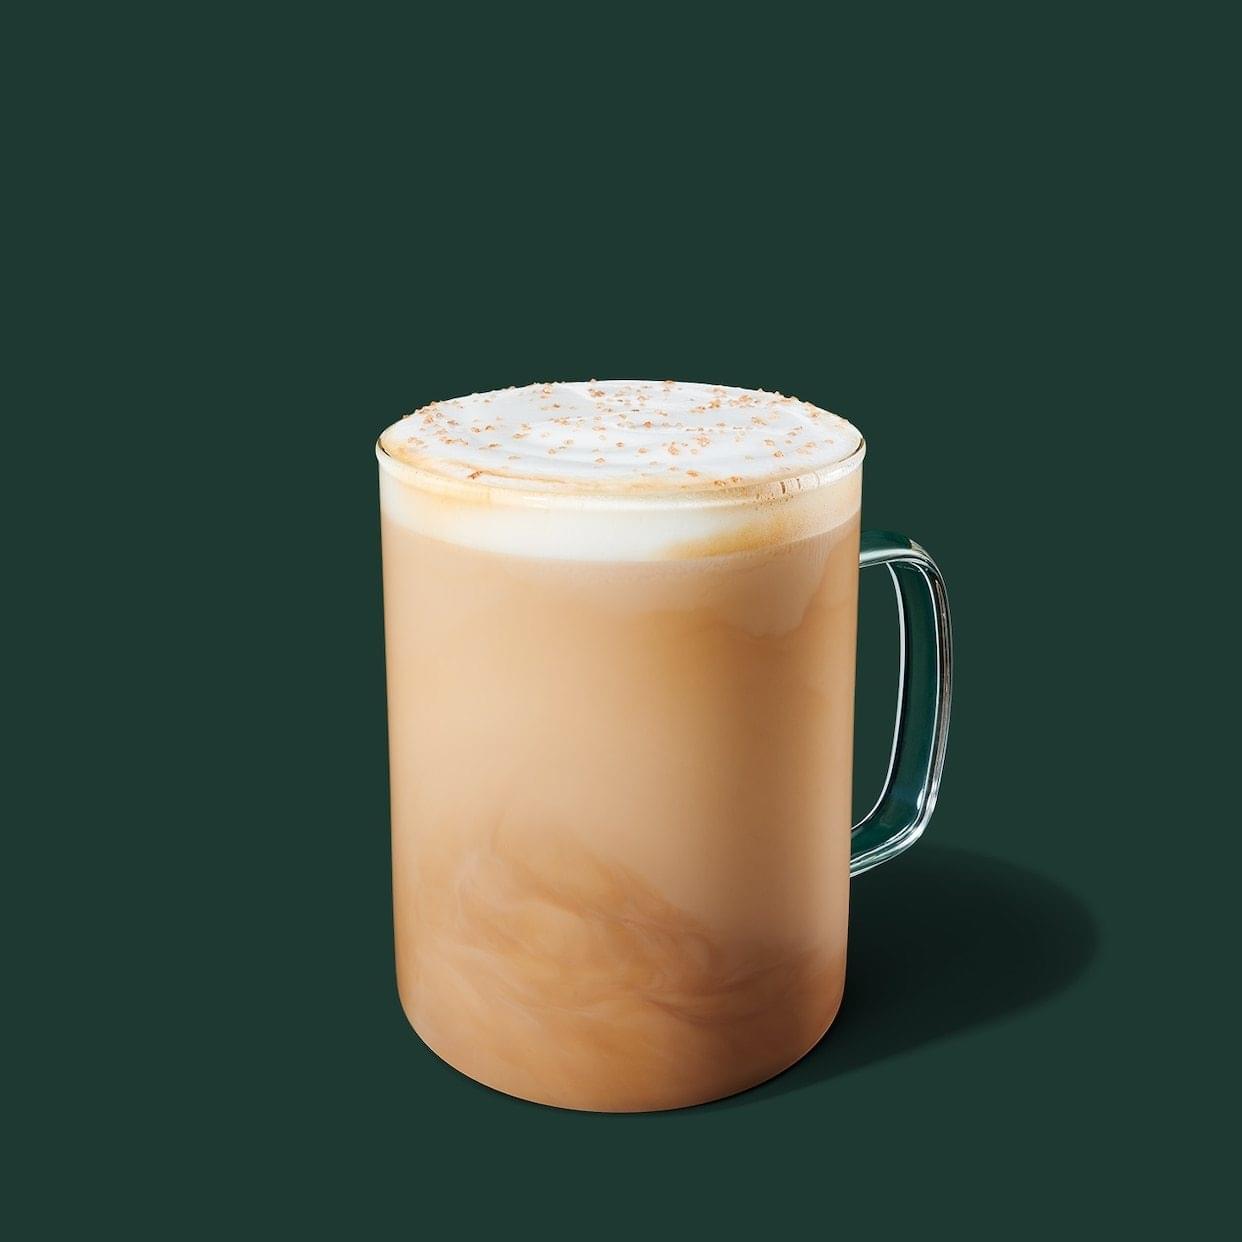 Starbucks Pistachio Latte Nutrition Facts